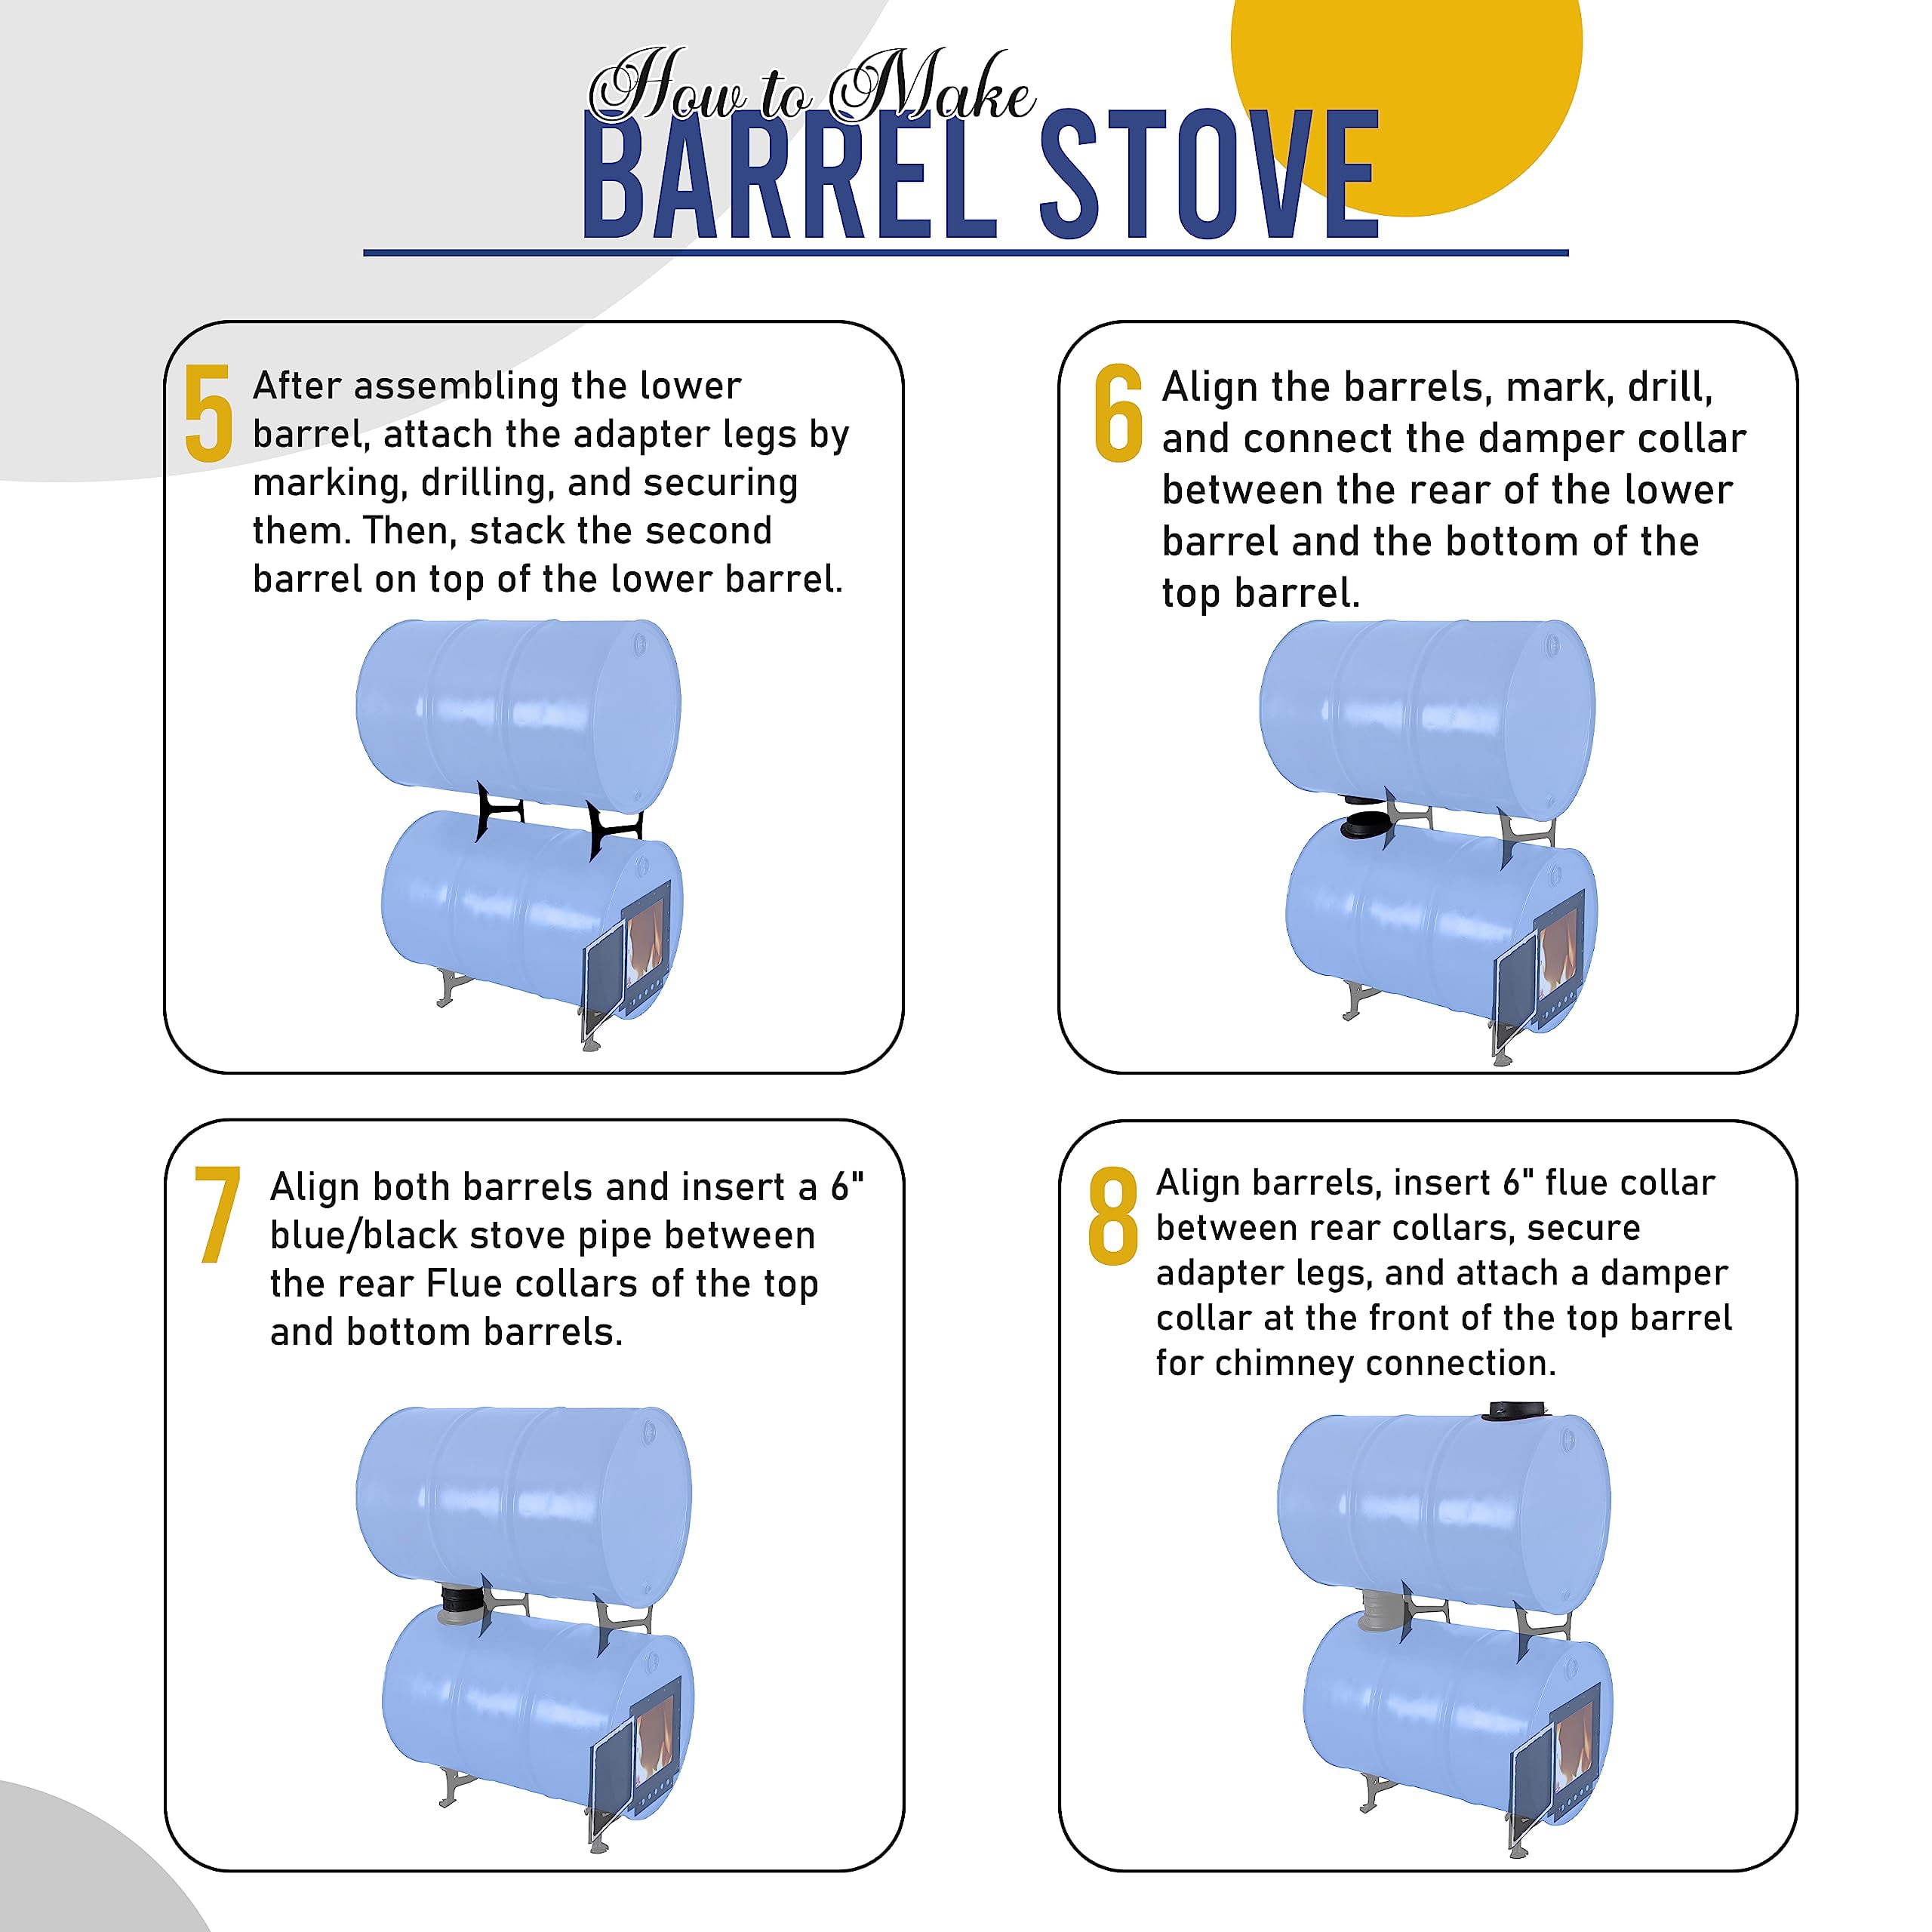  Sonret Barrel Fire Kit – Perfect for 30-55 Gallon Barrel Metal  Barrel - Camping Equipment Barrel Stove Kits - Fire Wood Camp Stove Fire Barrel  Kit for Emergency Heating & Cooking